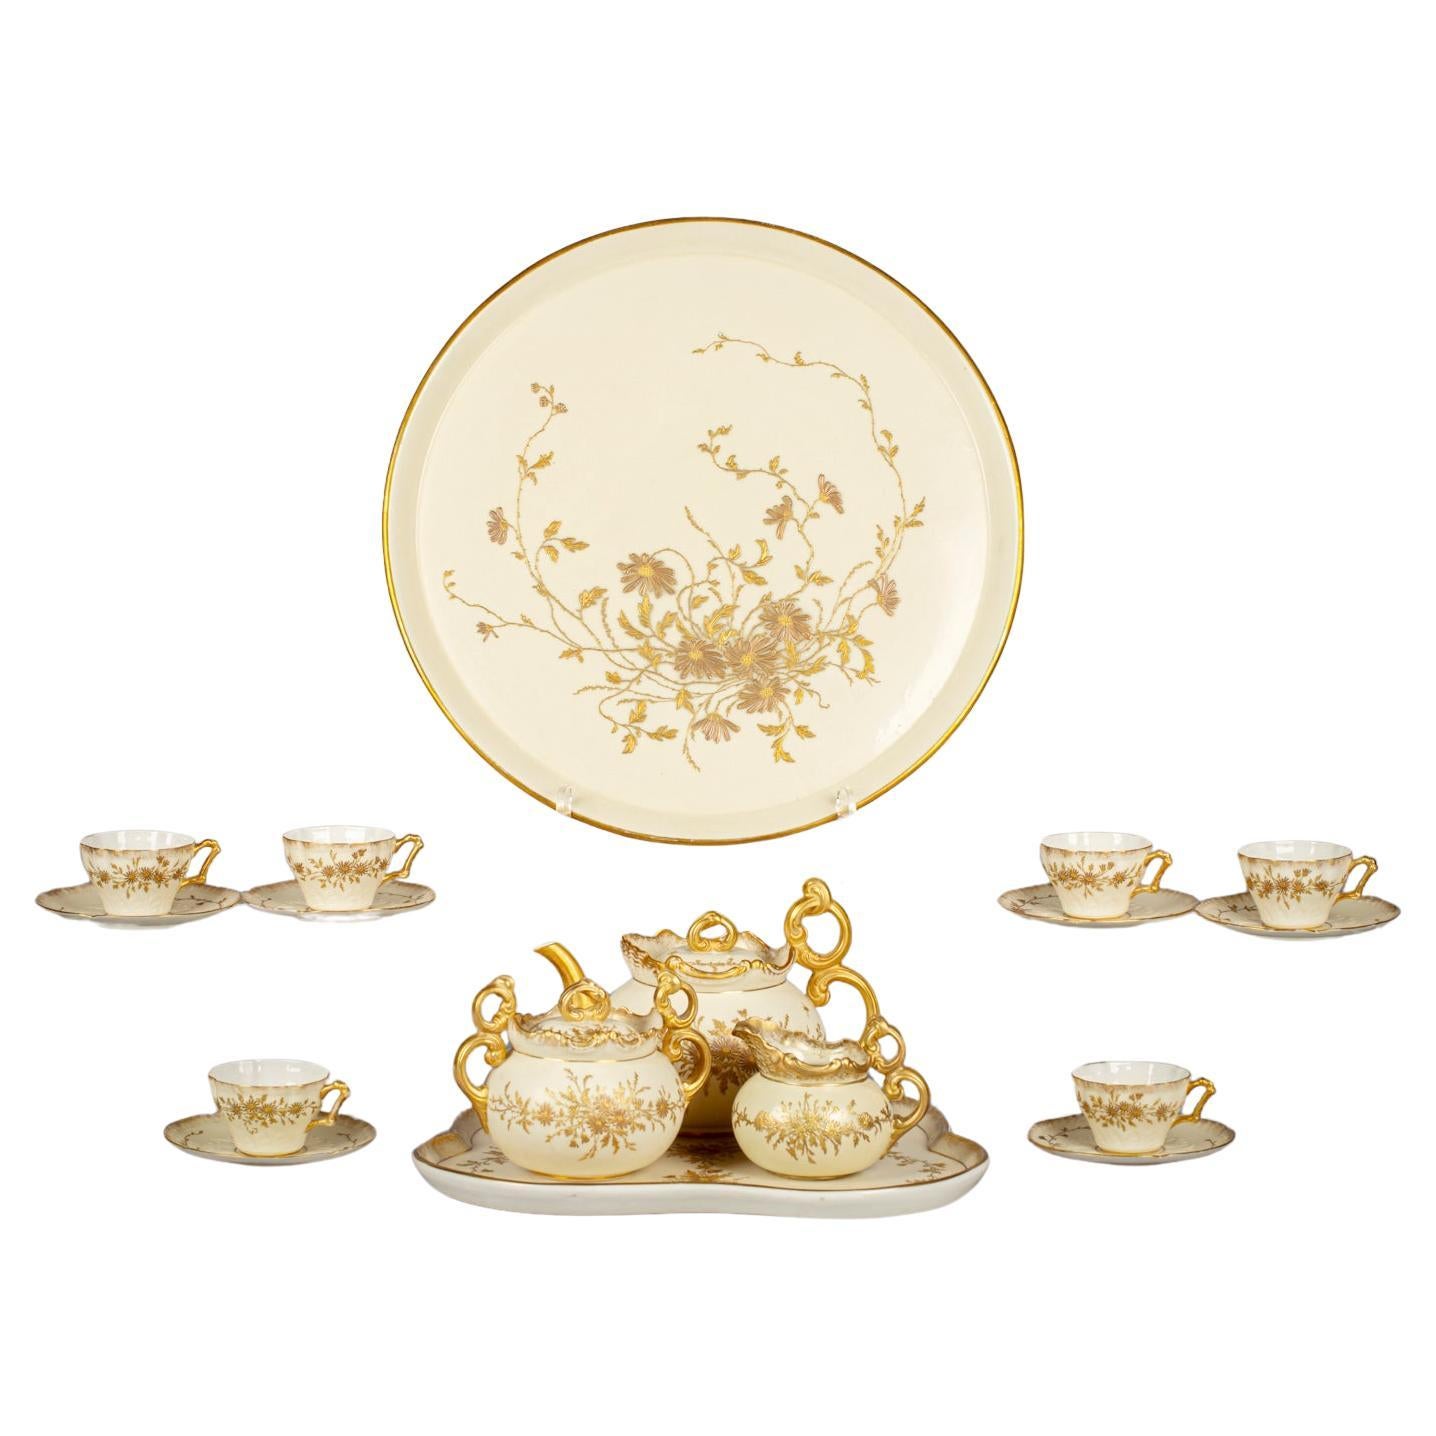 Grand service à thé en porcelaine Belleek Willets, vers 1890